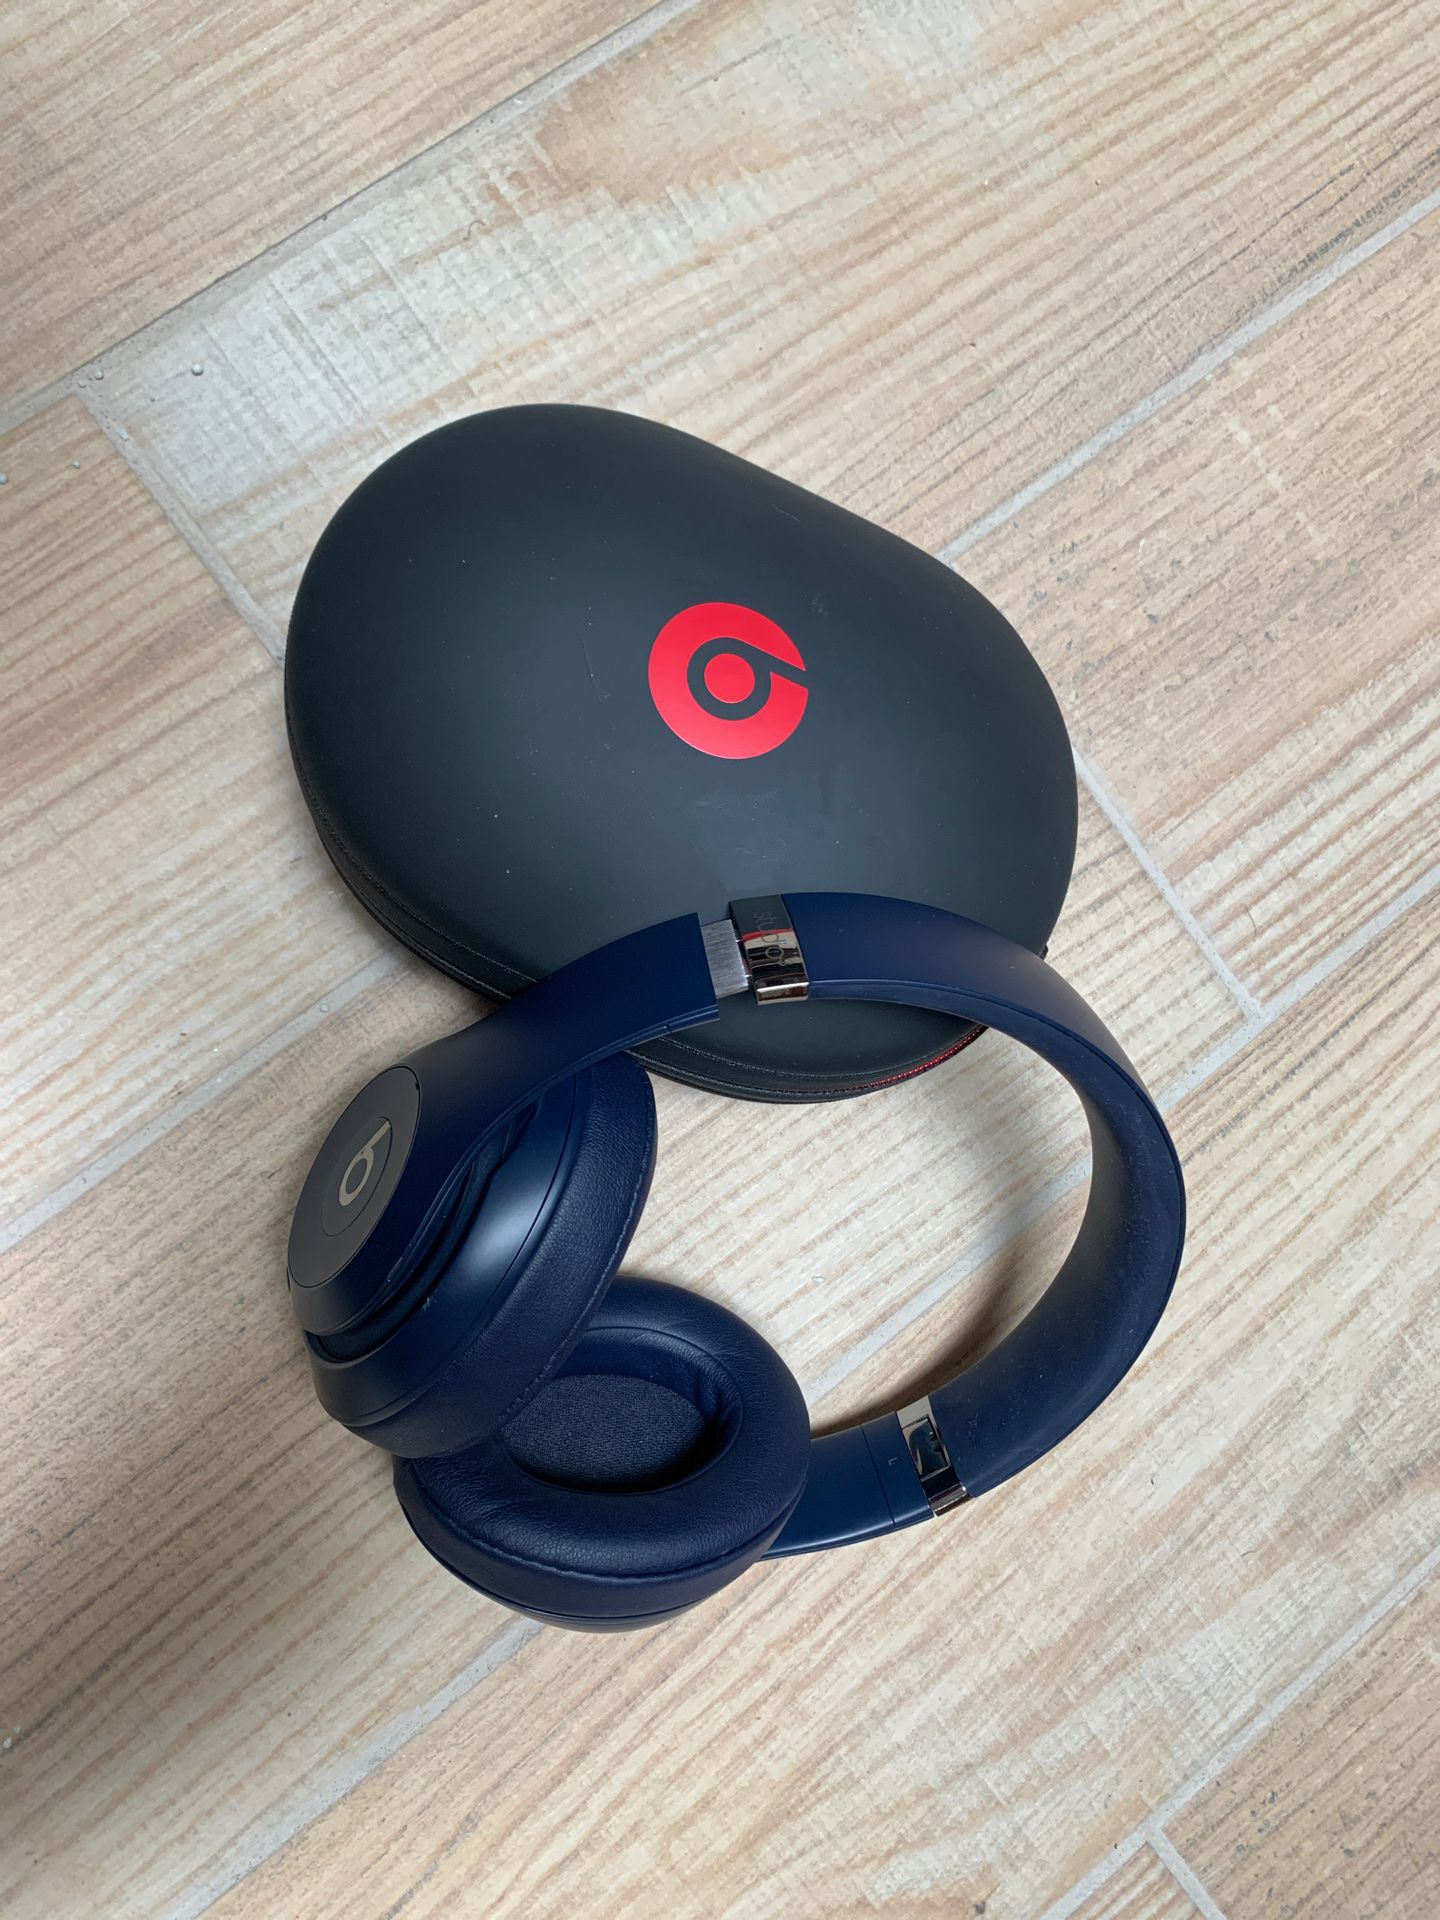 Beats Studio 3 Wireless (Blue) Headphones